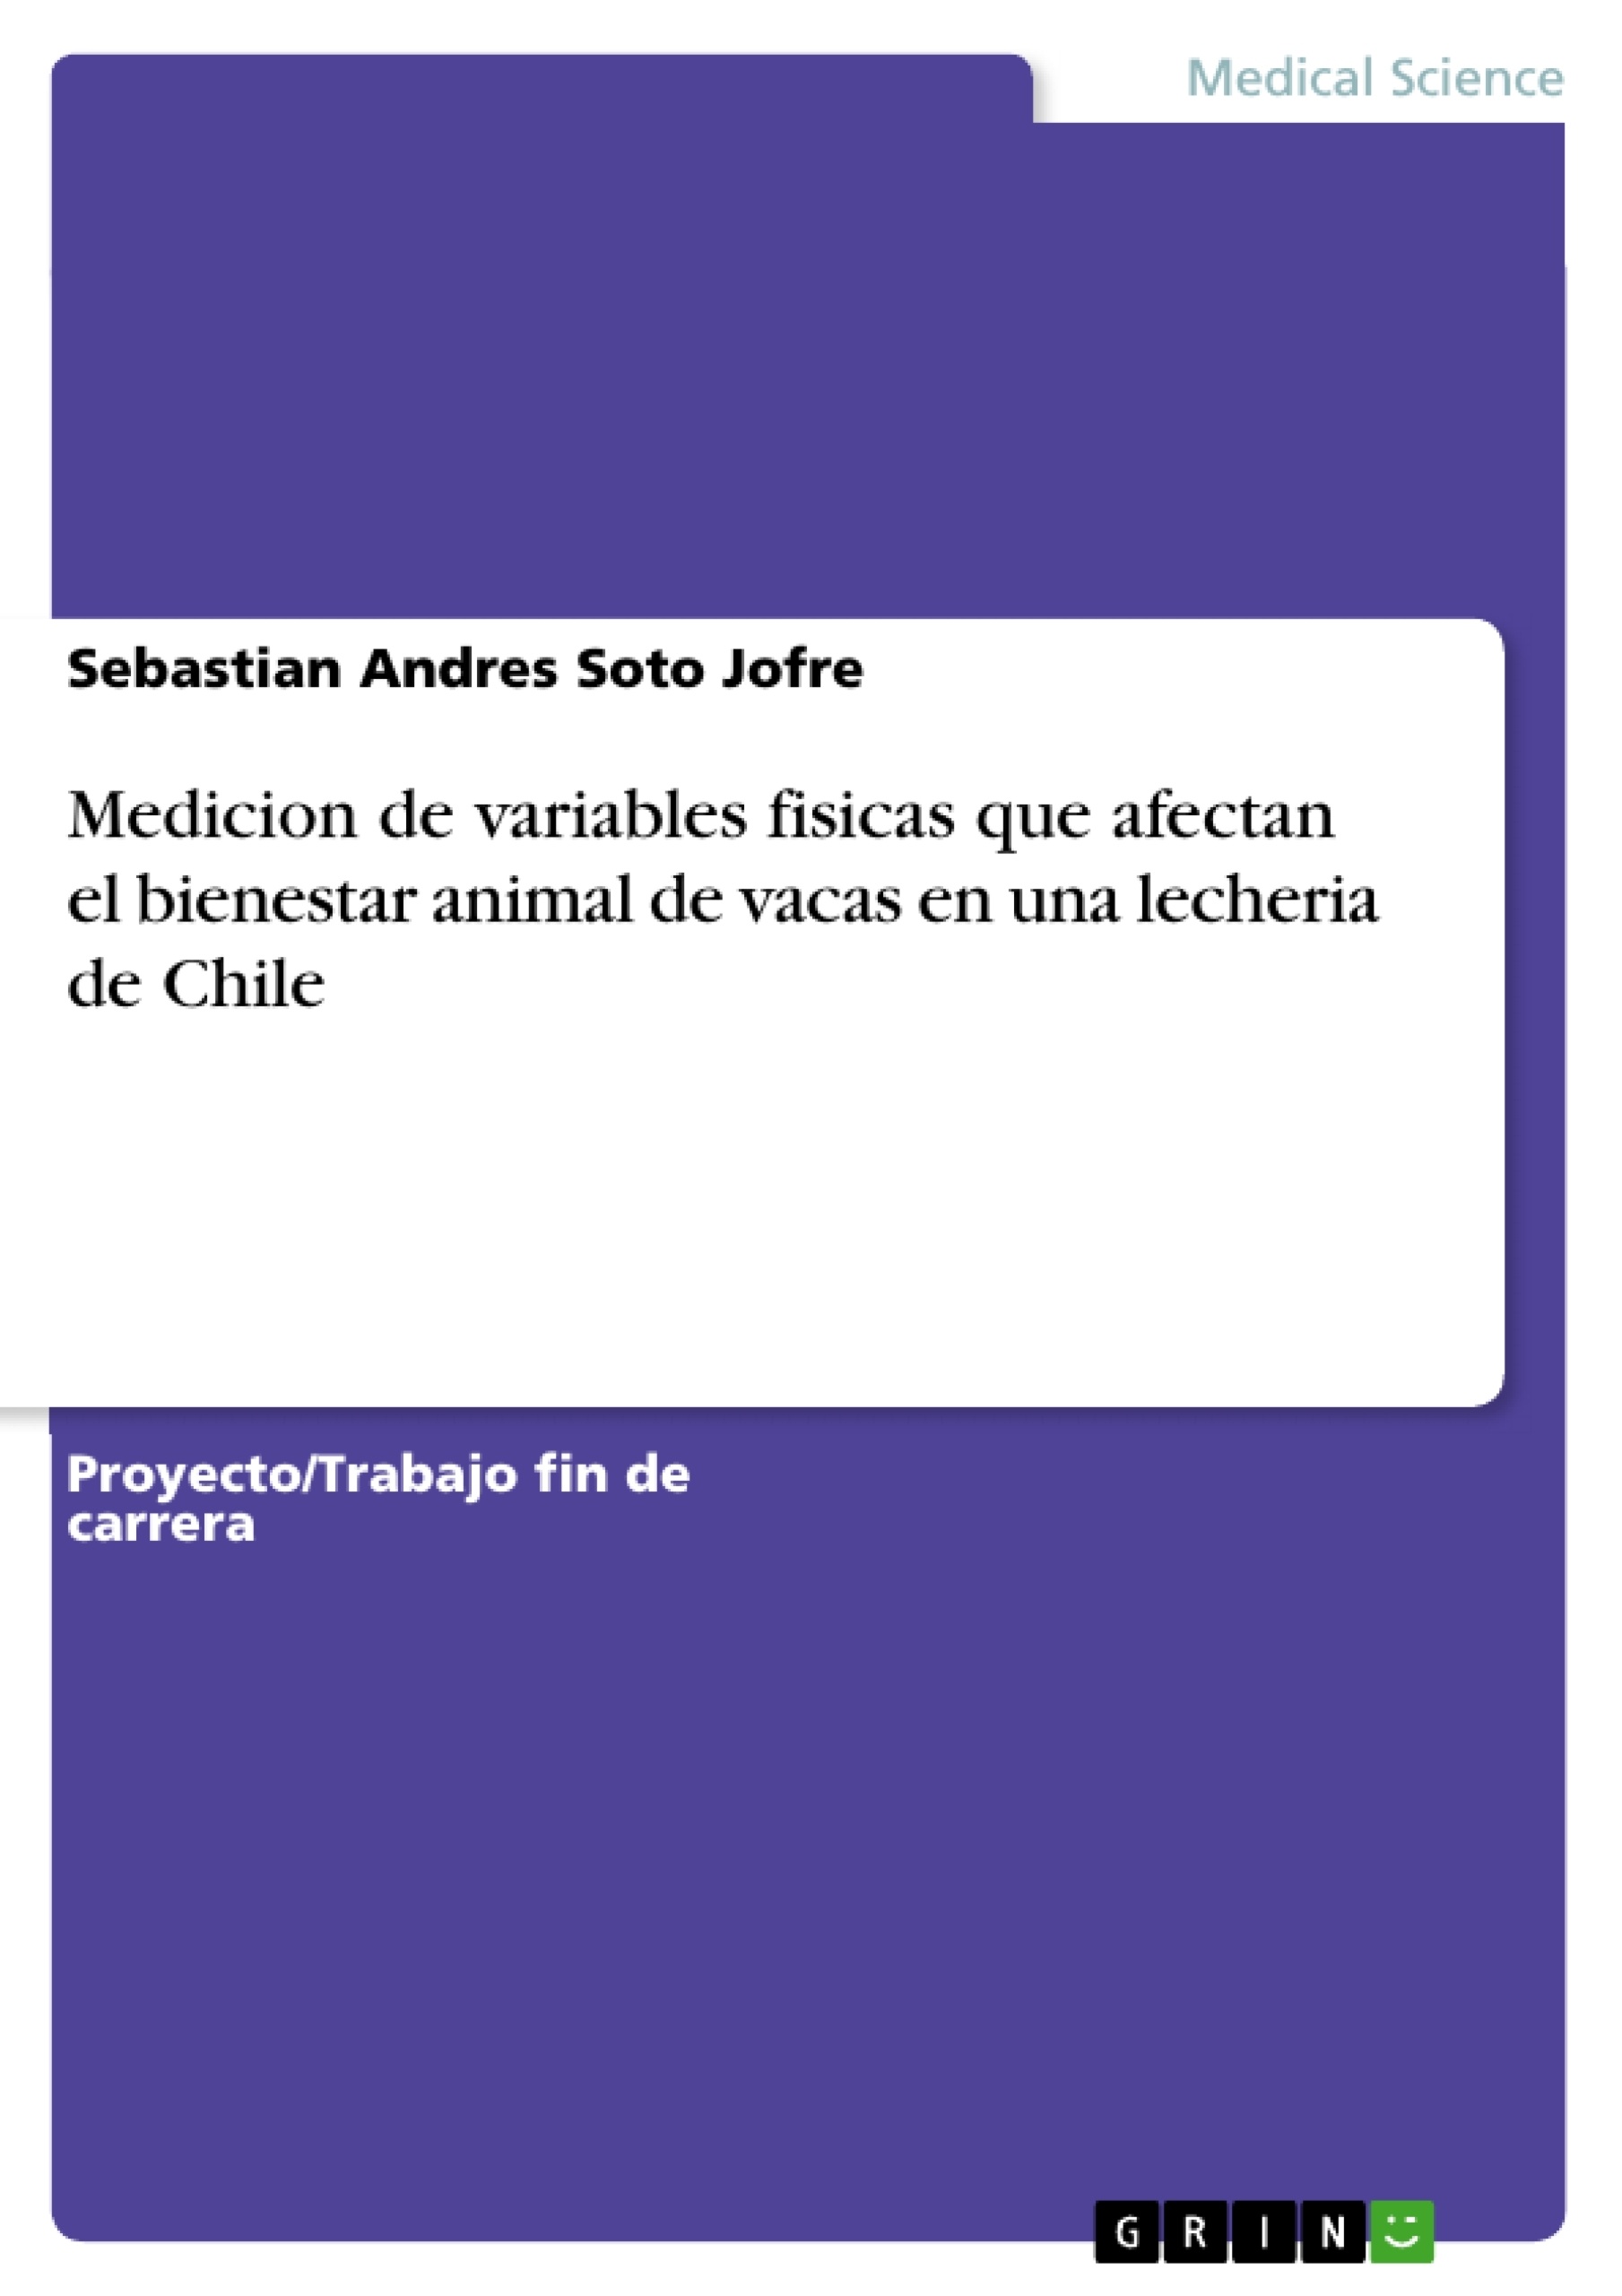 Título: Medicion de variables fisicas que afectan el bienestar animal de vacas en una lecheria de Chile